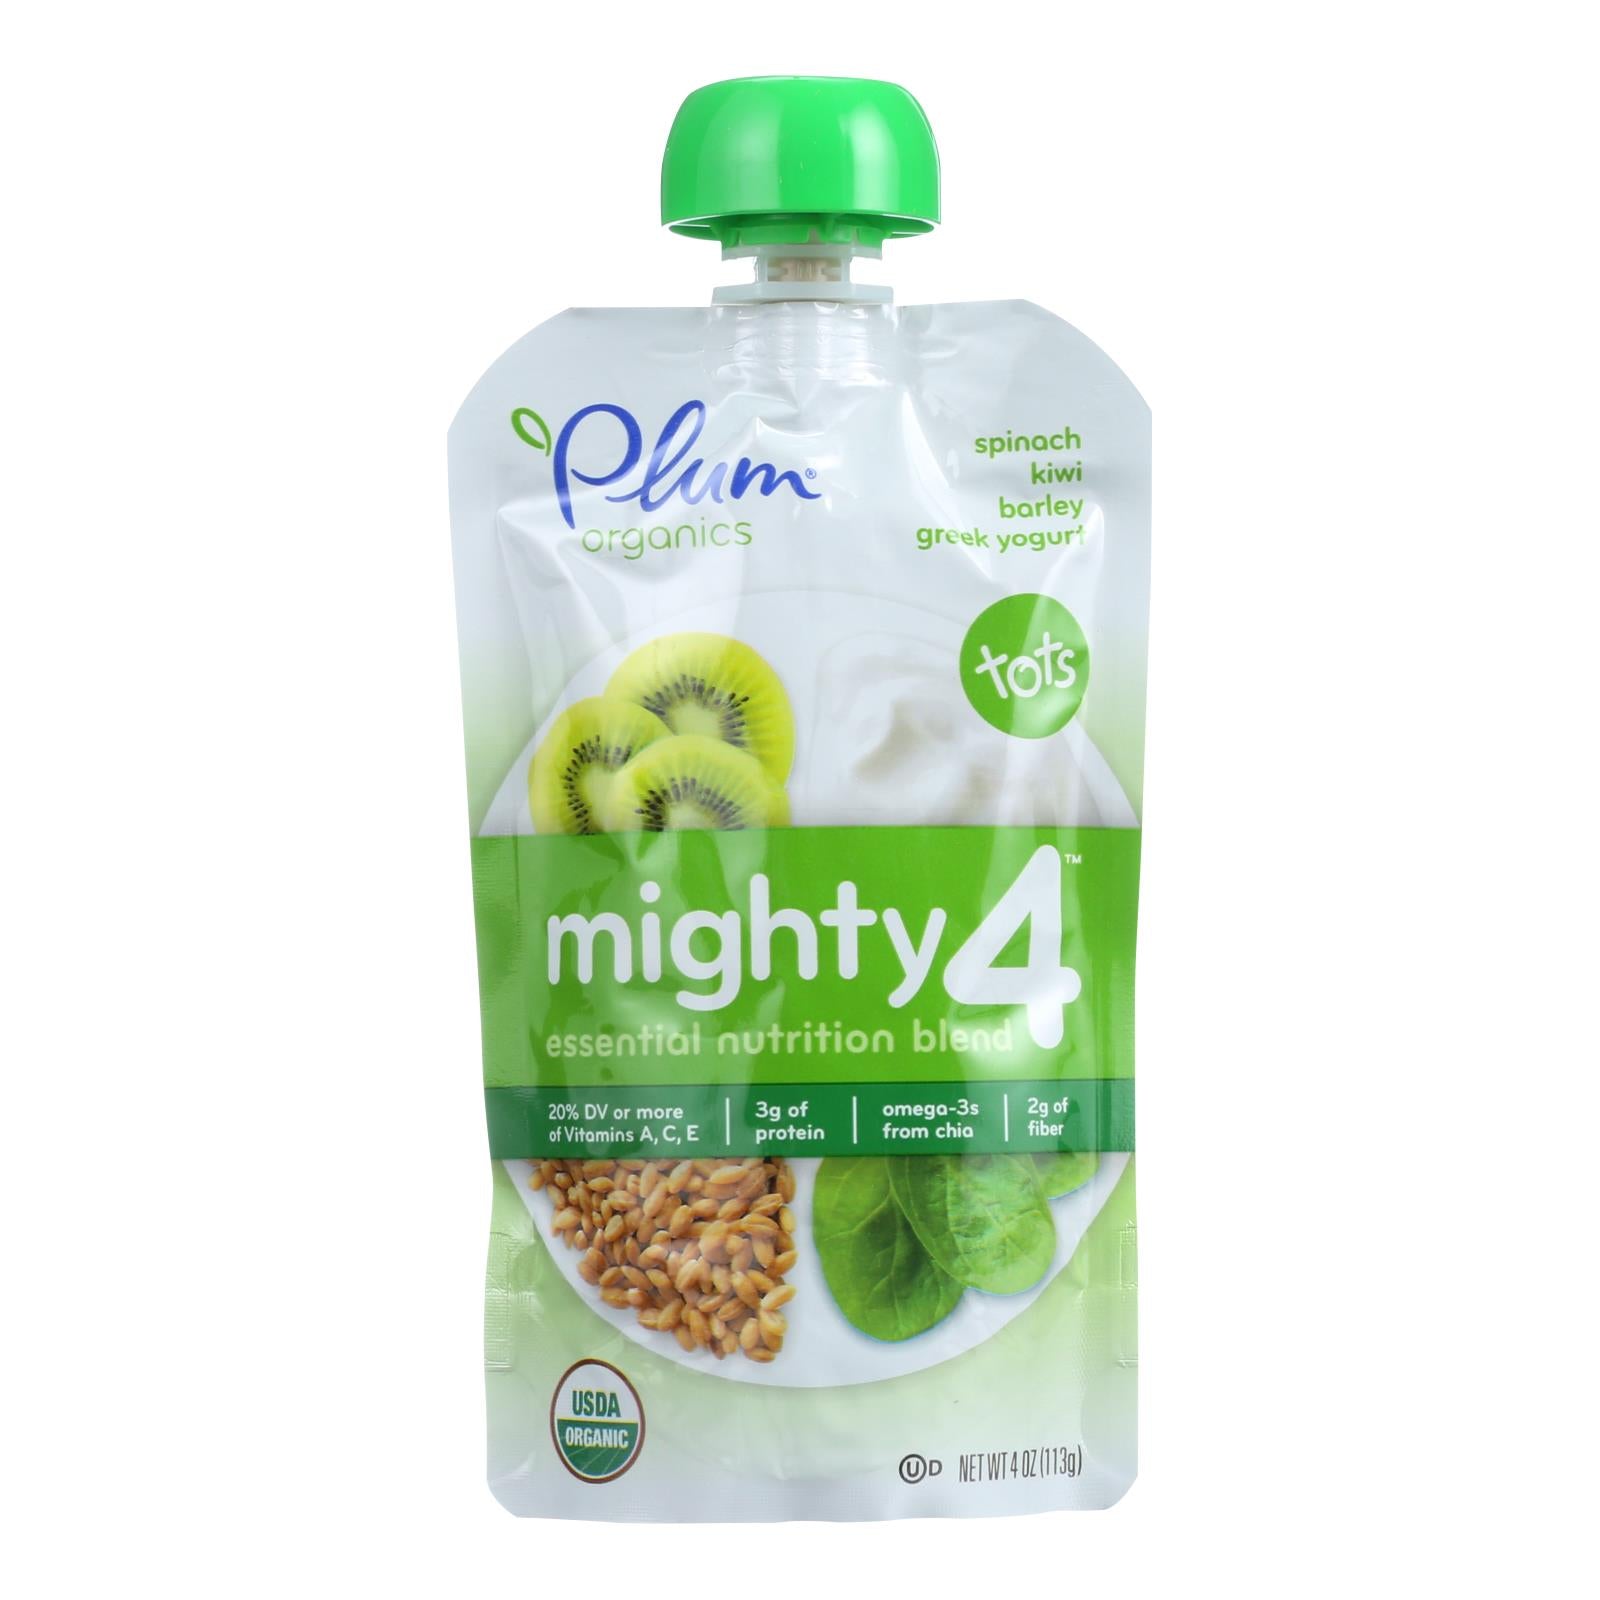 Plum Organics Essential Nutrition Blend - Mighty 4 - Spinach Kiwi Barley Greek Yogurt - 4 Oz - Case Of 6 - Whole Green Foods